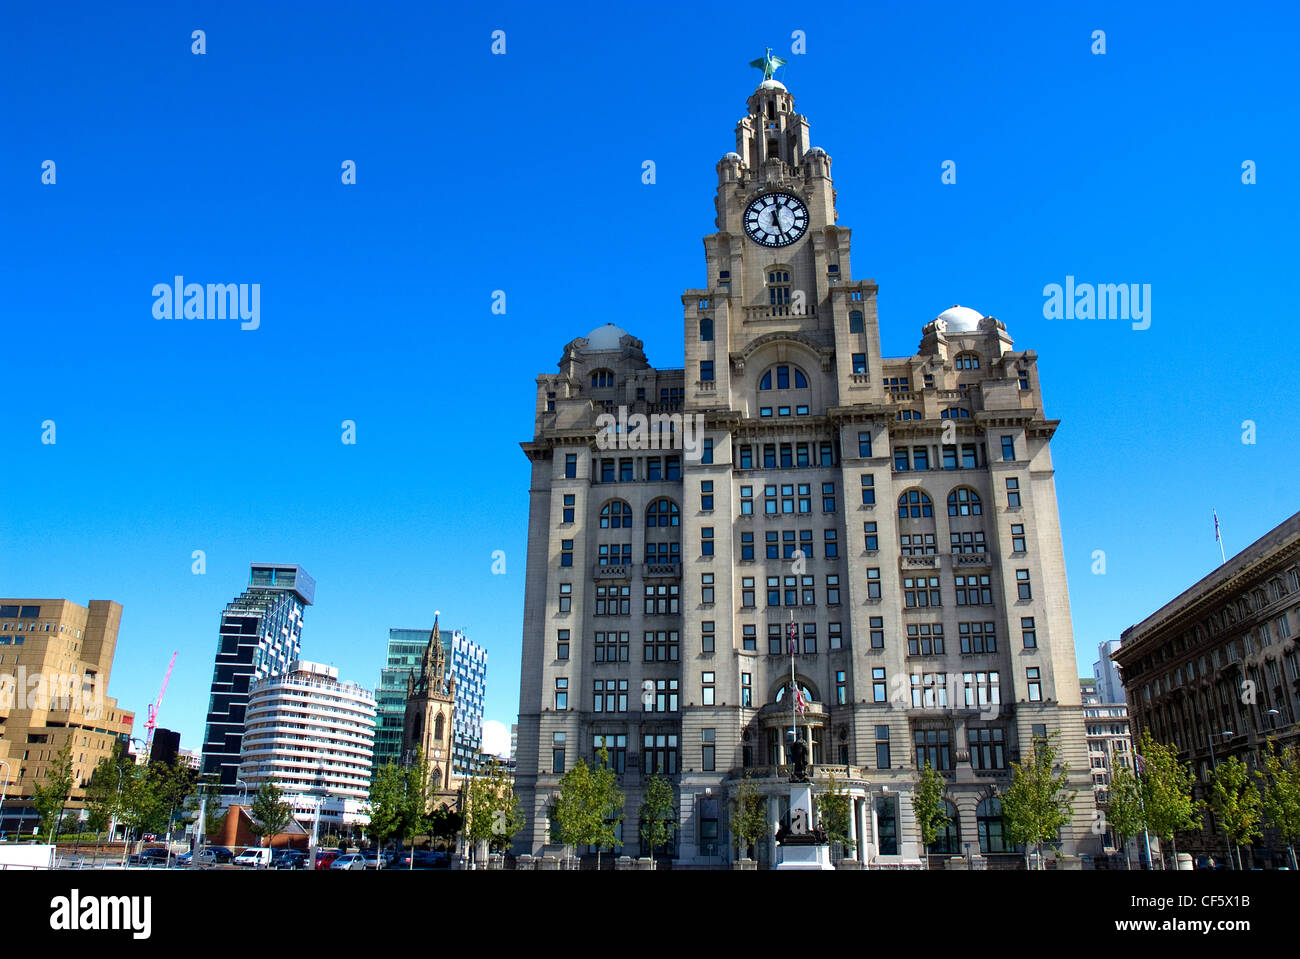 Das Royal Liver Building auf dem Molenkopf in Liverpool. Es ist eine der drei Grazien Liverpools. Stockfoto